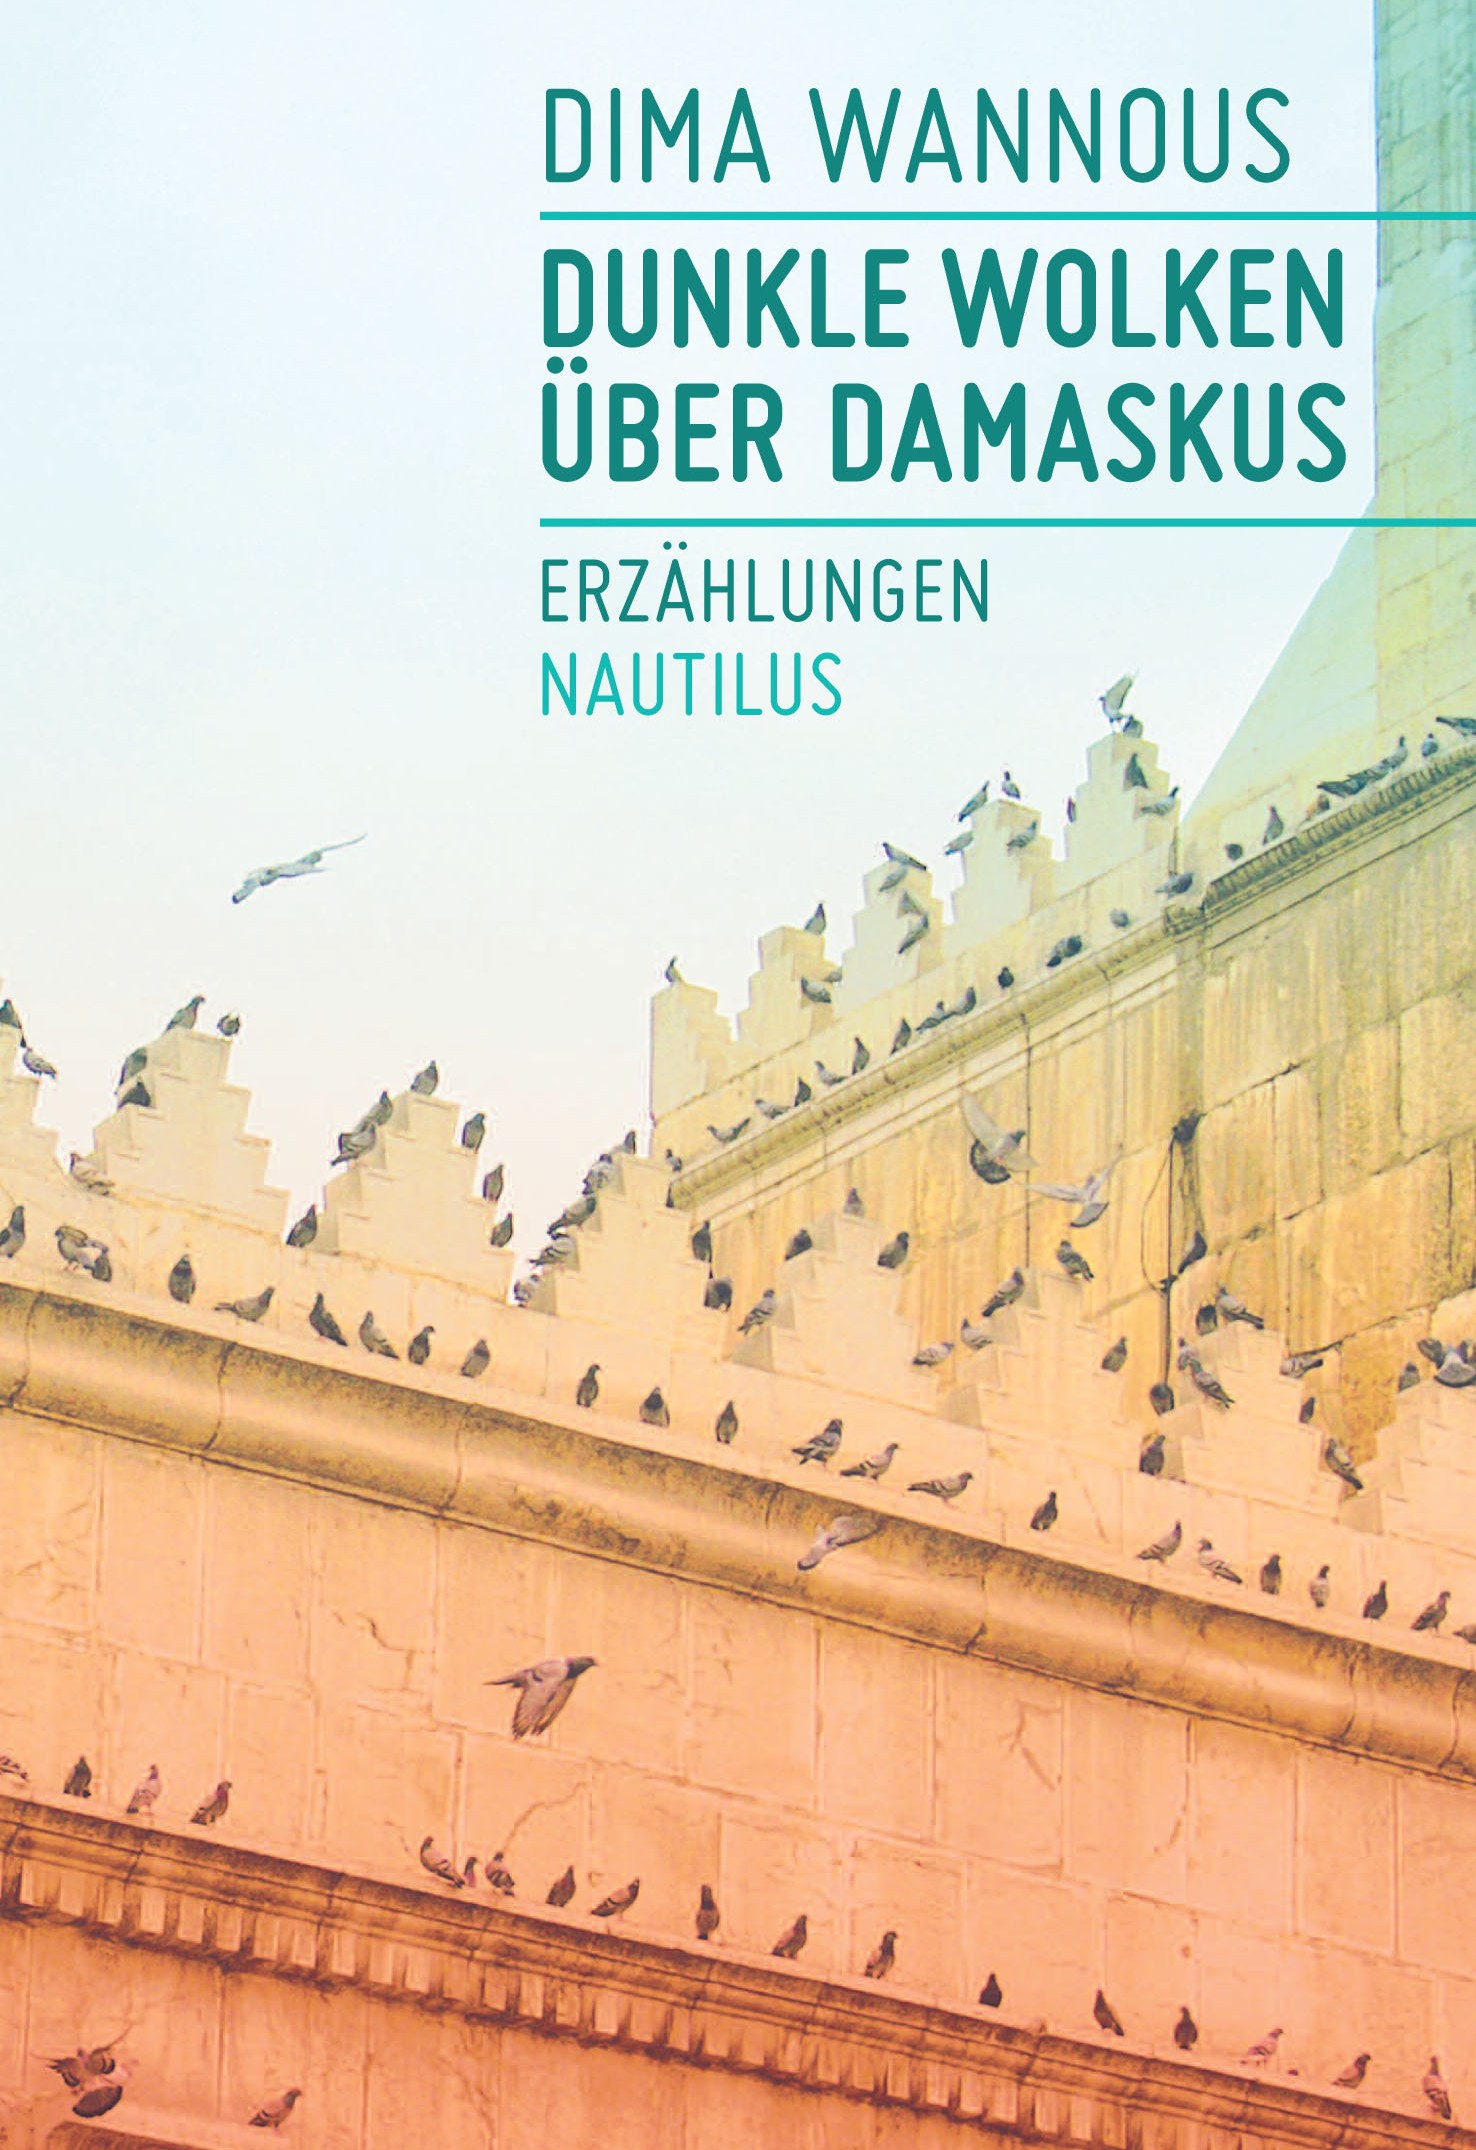 Buchcover Dima Wannous: "Dunkle Wolken über Damaskus", im Verlag Edition Nautilus 